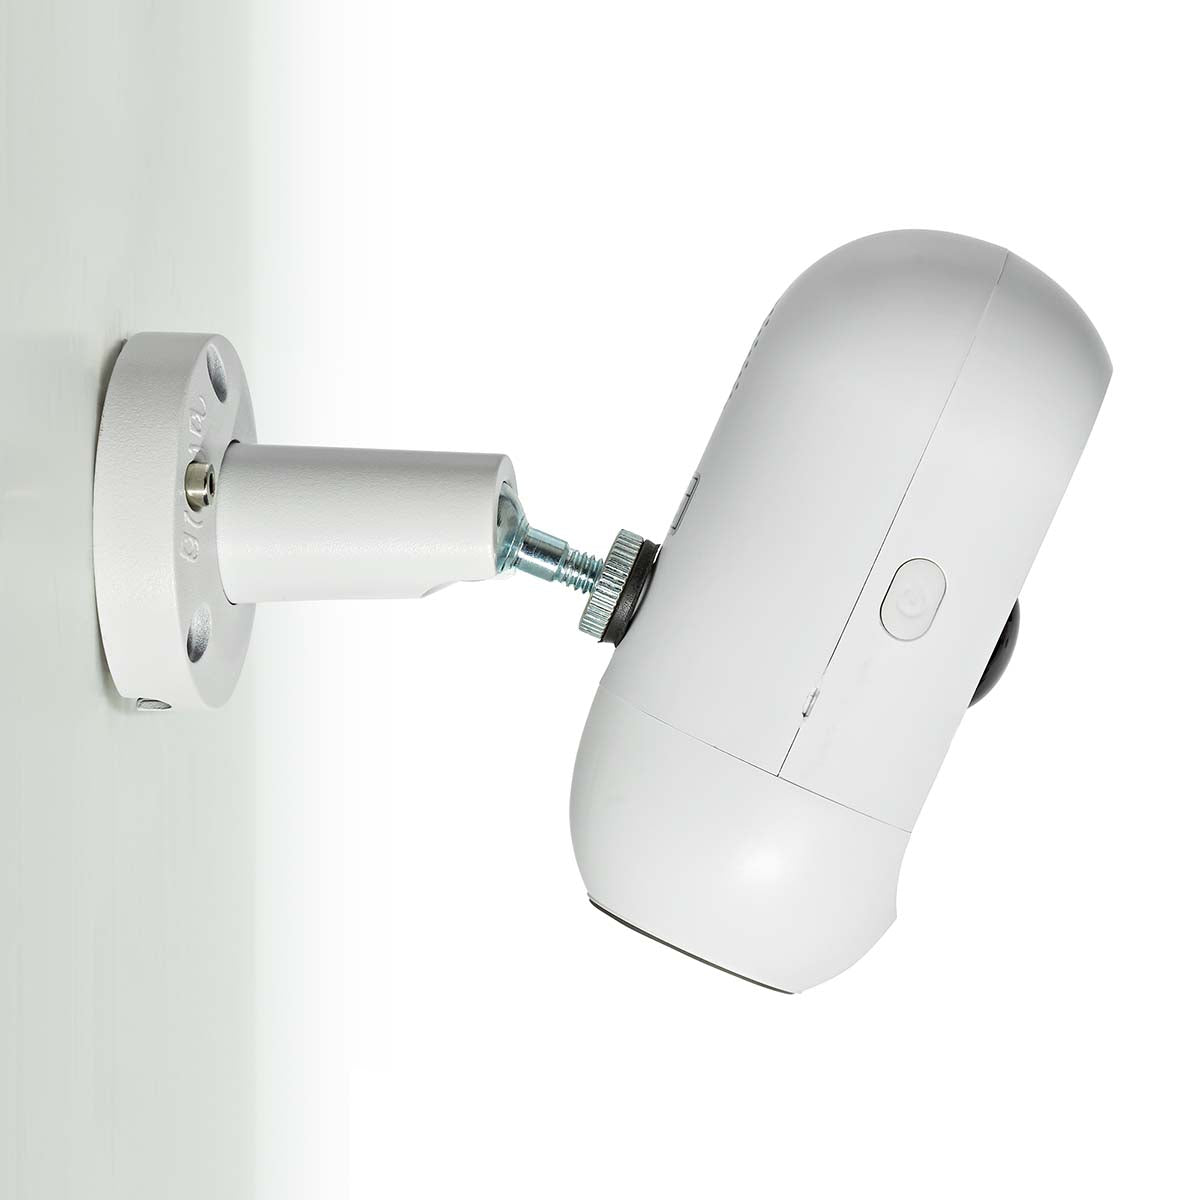 SmartLife Außenkamera Überwachungskamera Wlan Kabellos Nachtsicht App Smart Home